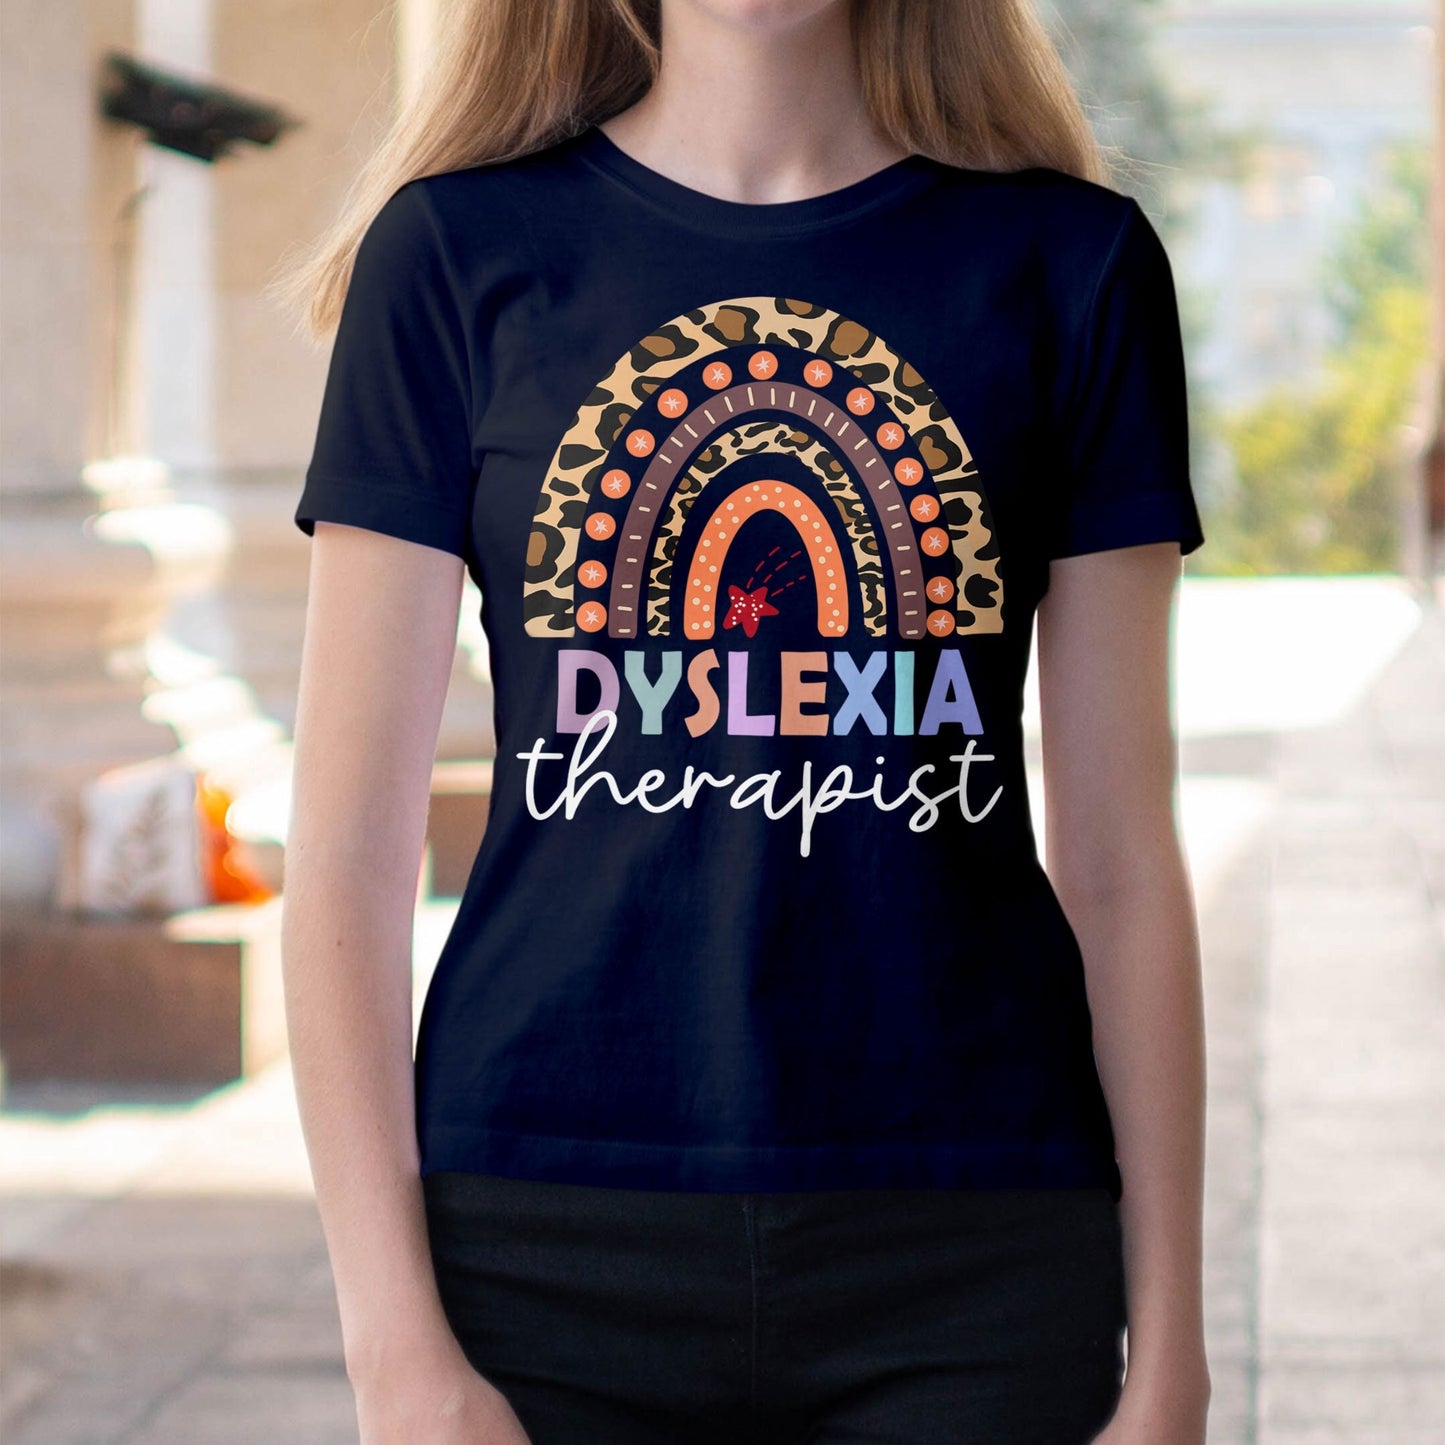 Dyslexia, Dyslexia Shirt, Dyslexia Therapist Shirt, Dyslexia Therapy Shirt, Mom Support Dyslexic, Dyslexia Awareness, Dyslexia Teacher Gift